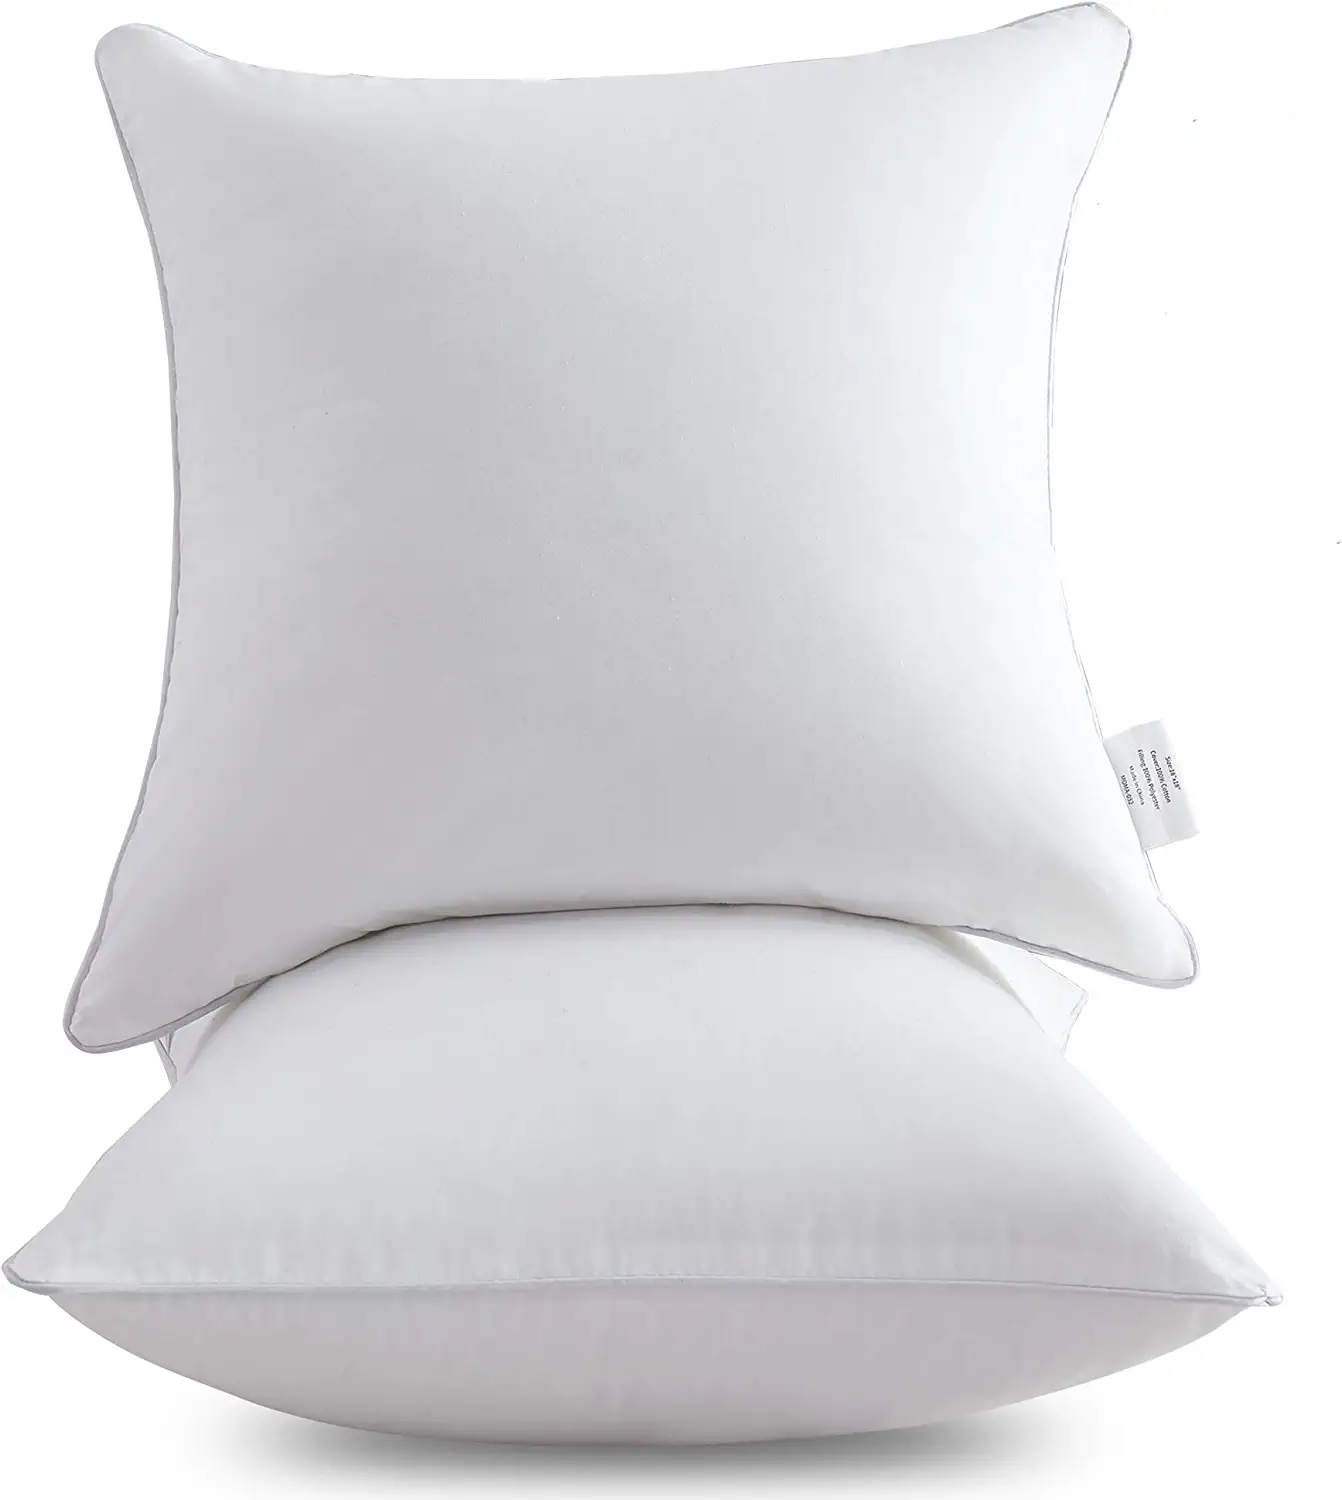 Oubonun Zipper Skin-Friendly Pillow Inserts, 2-Pack